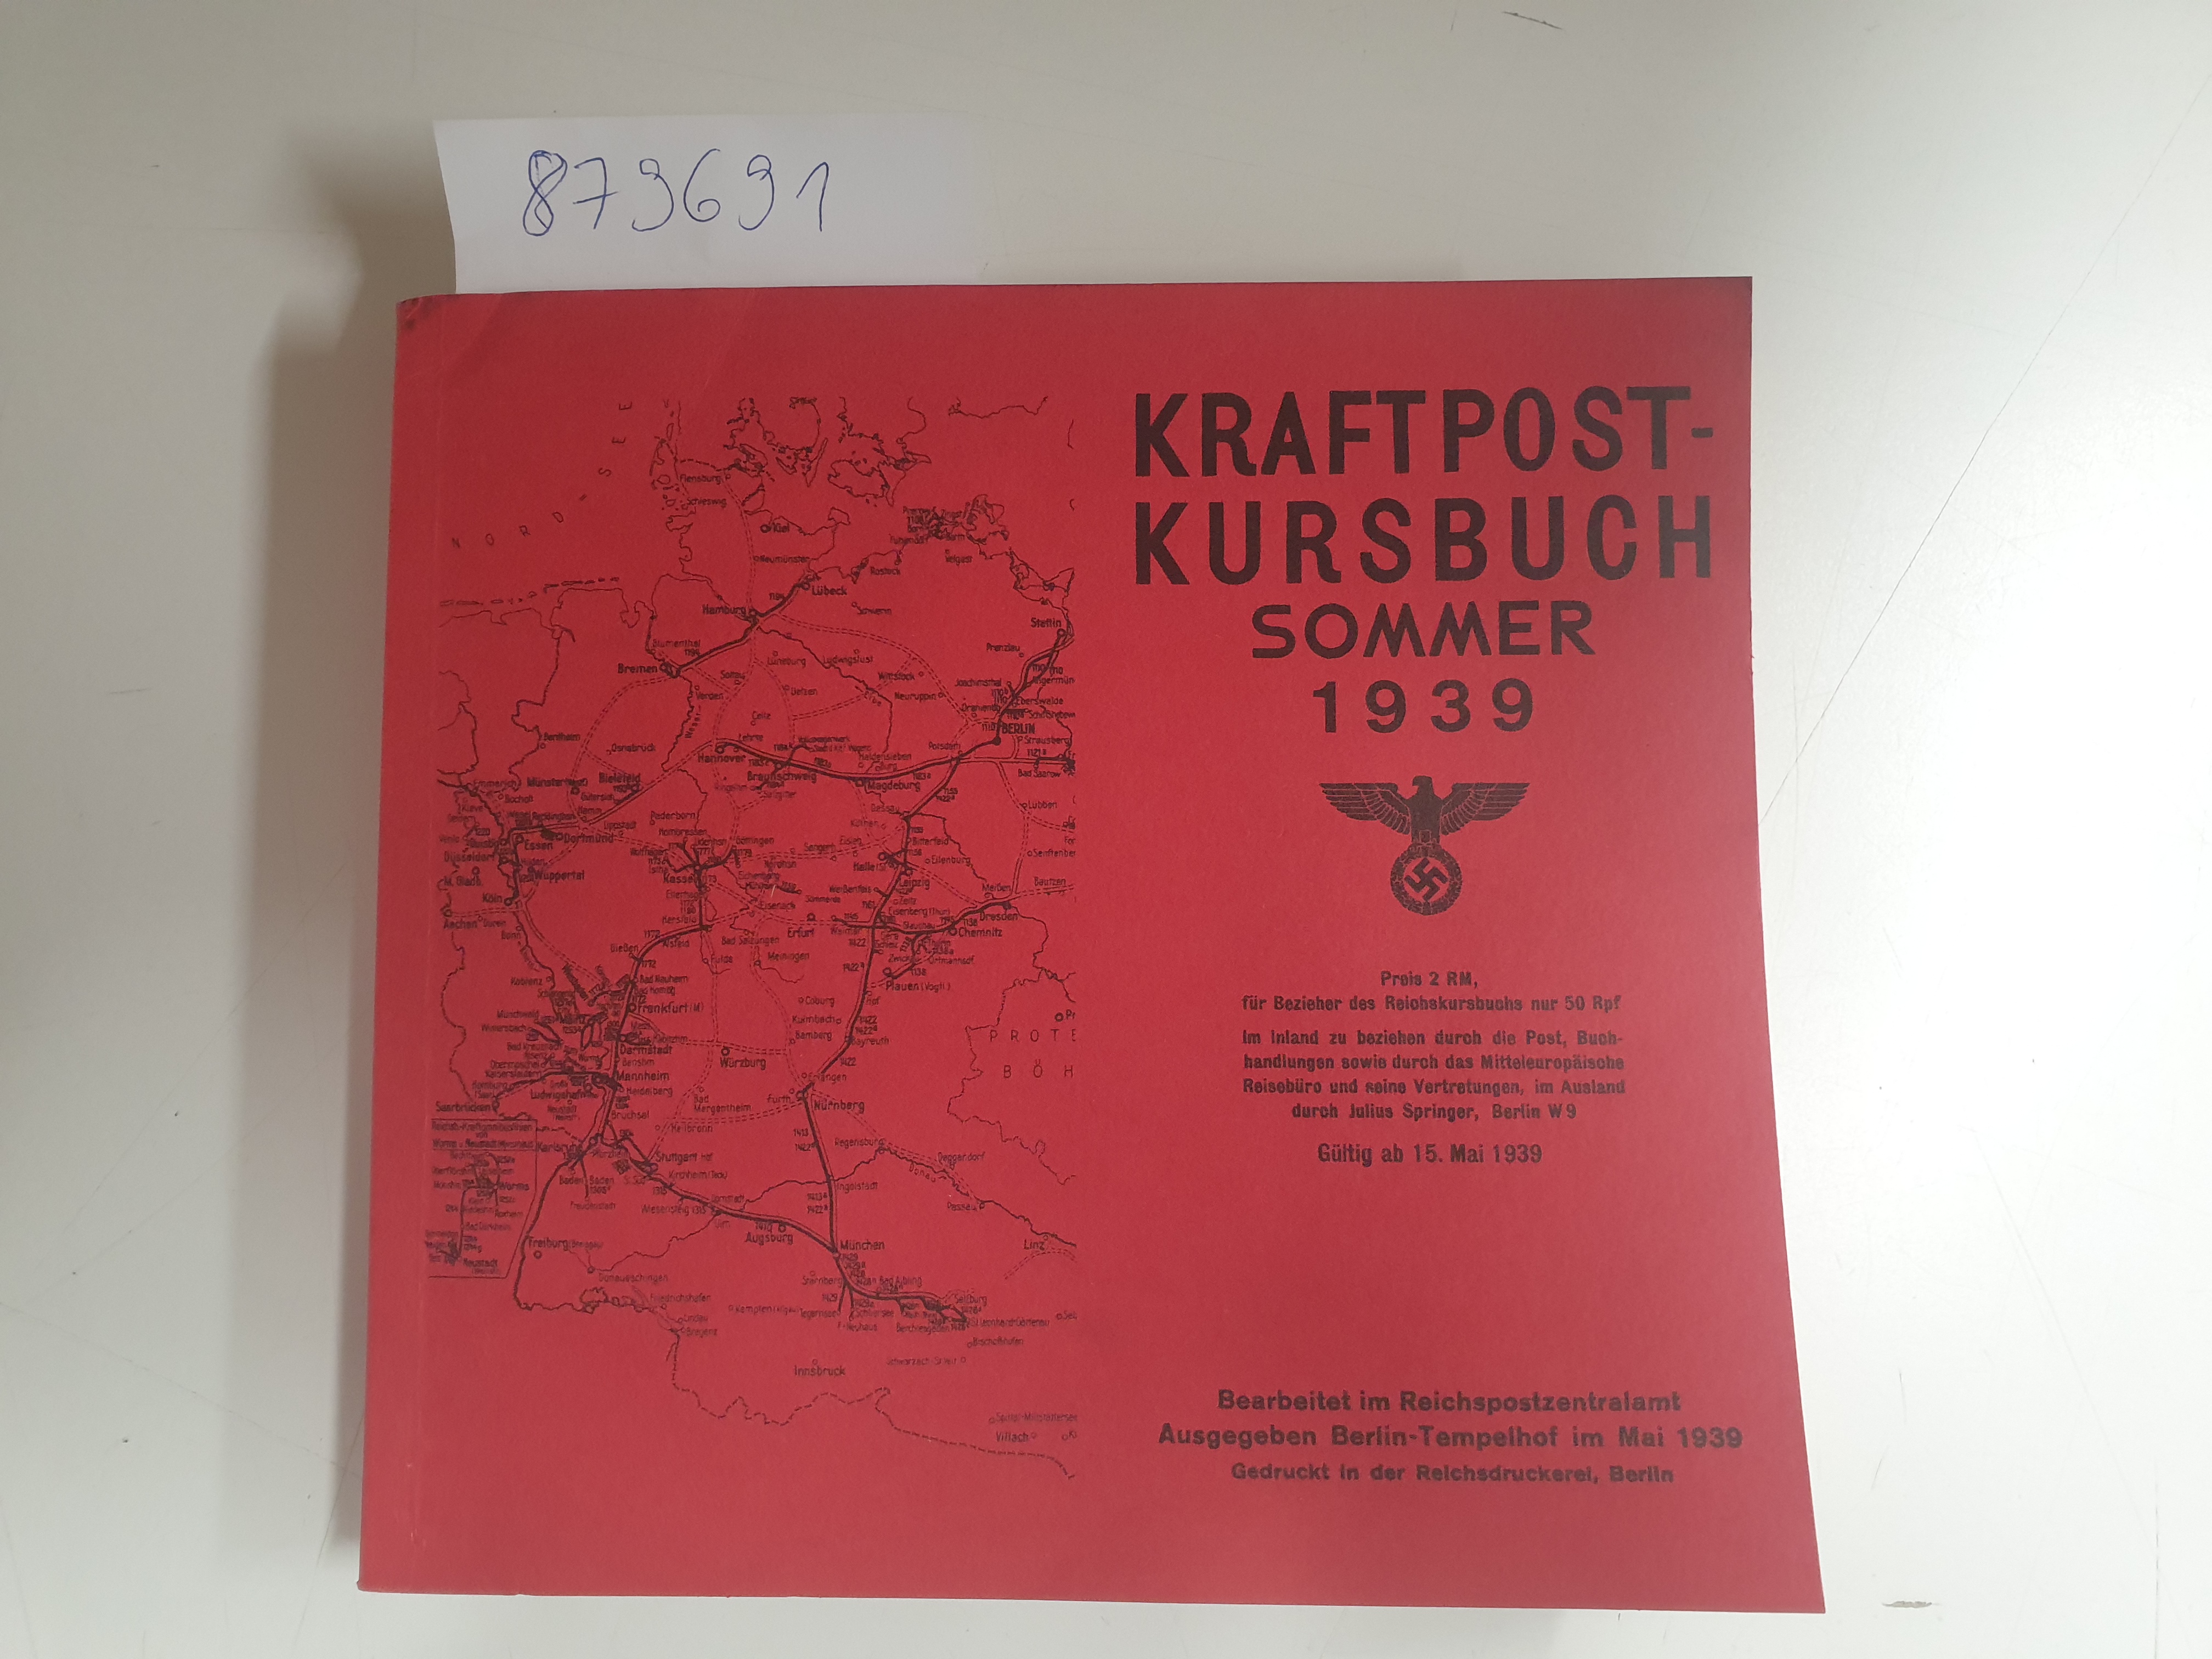 Kraftpost-Kursbuch - Reprint : Sommer 1939 : - Reichspostkanzleramt, (Hrsg.)